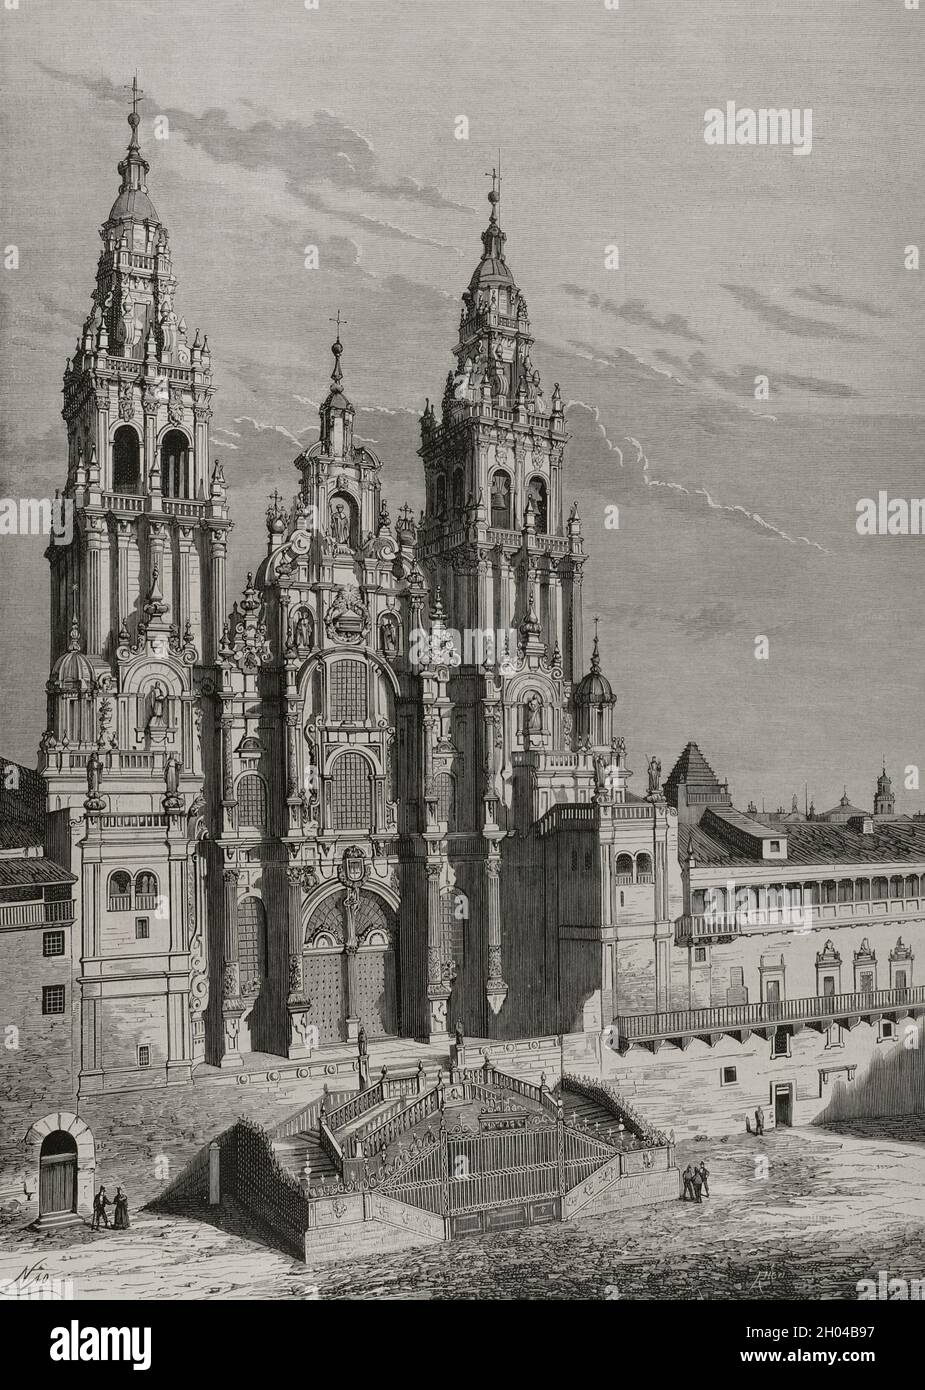 Spain, Galicia. Cathedral of Santiago de Compostela, Main facade or Obradoiro. Illustration by Nao. Engraving by Rico. La Ilustración Española y Americana, 1878. Stock Photo